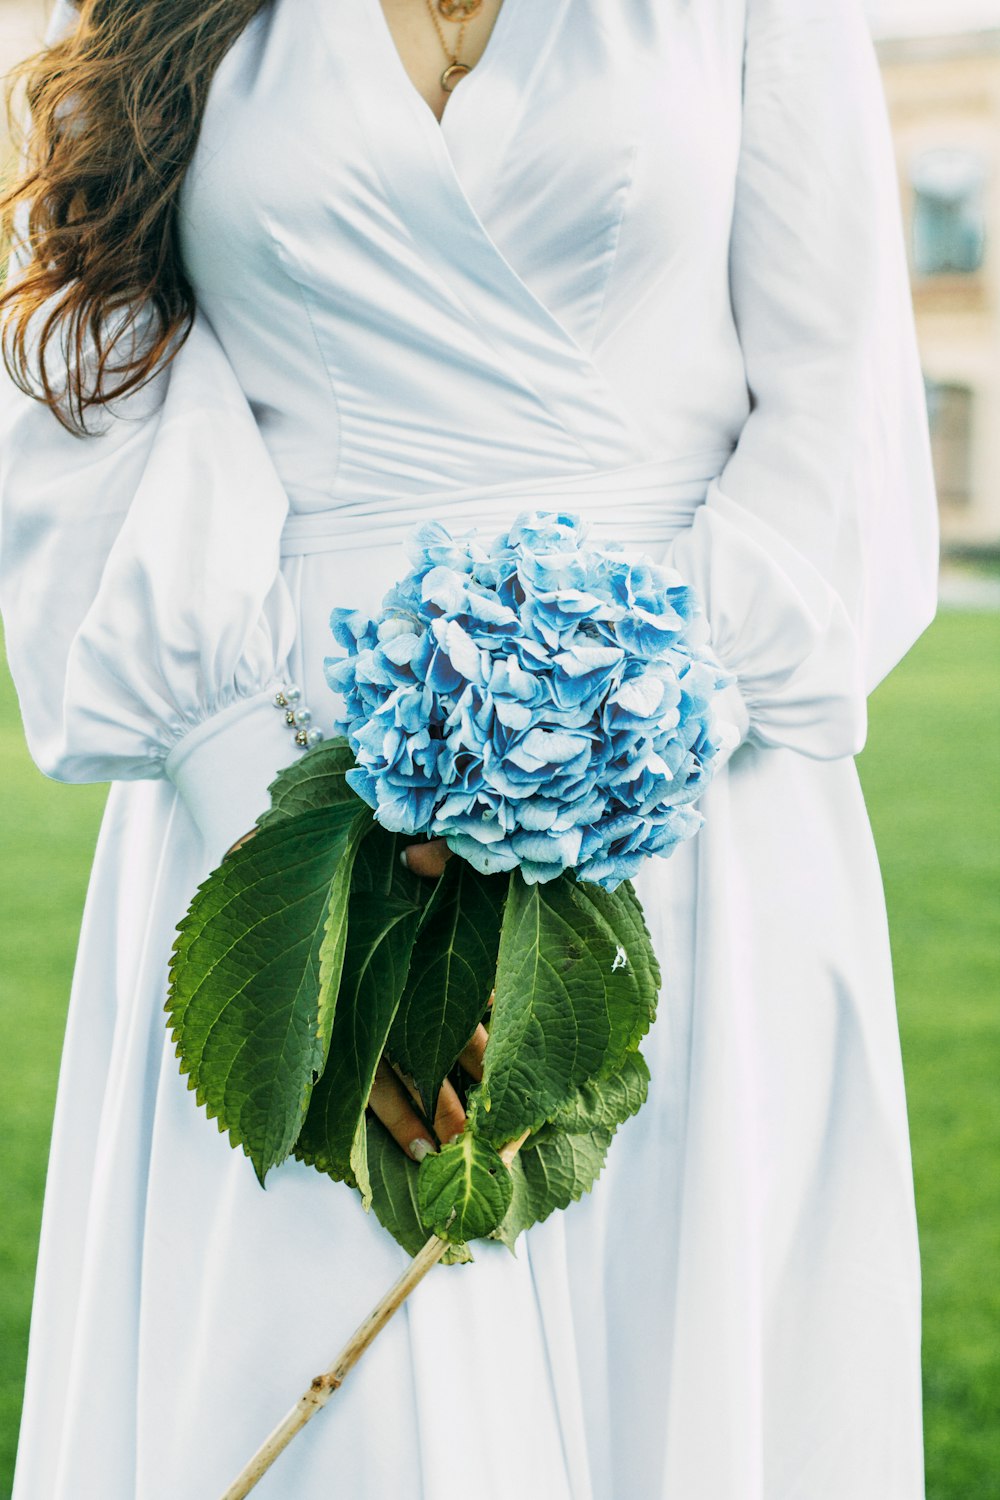 femme en robe blanche à manches longues tenant un bouquet de fleurs bleues  photo – Photo Humain Gratuite sur Unsplash